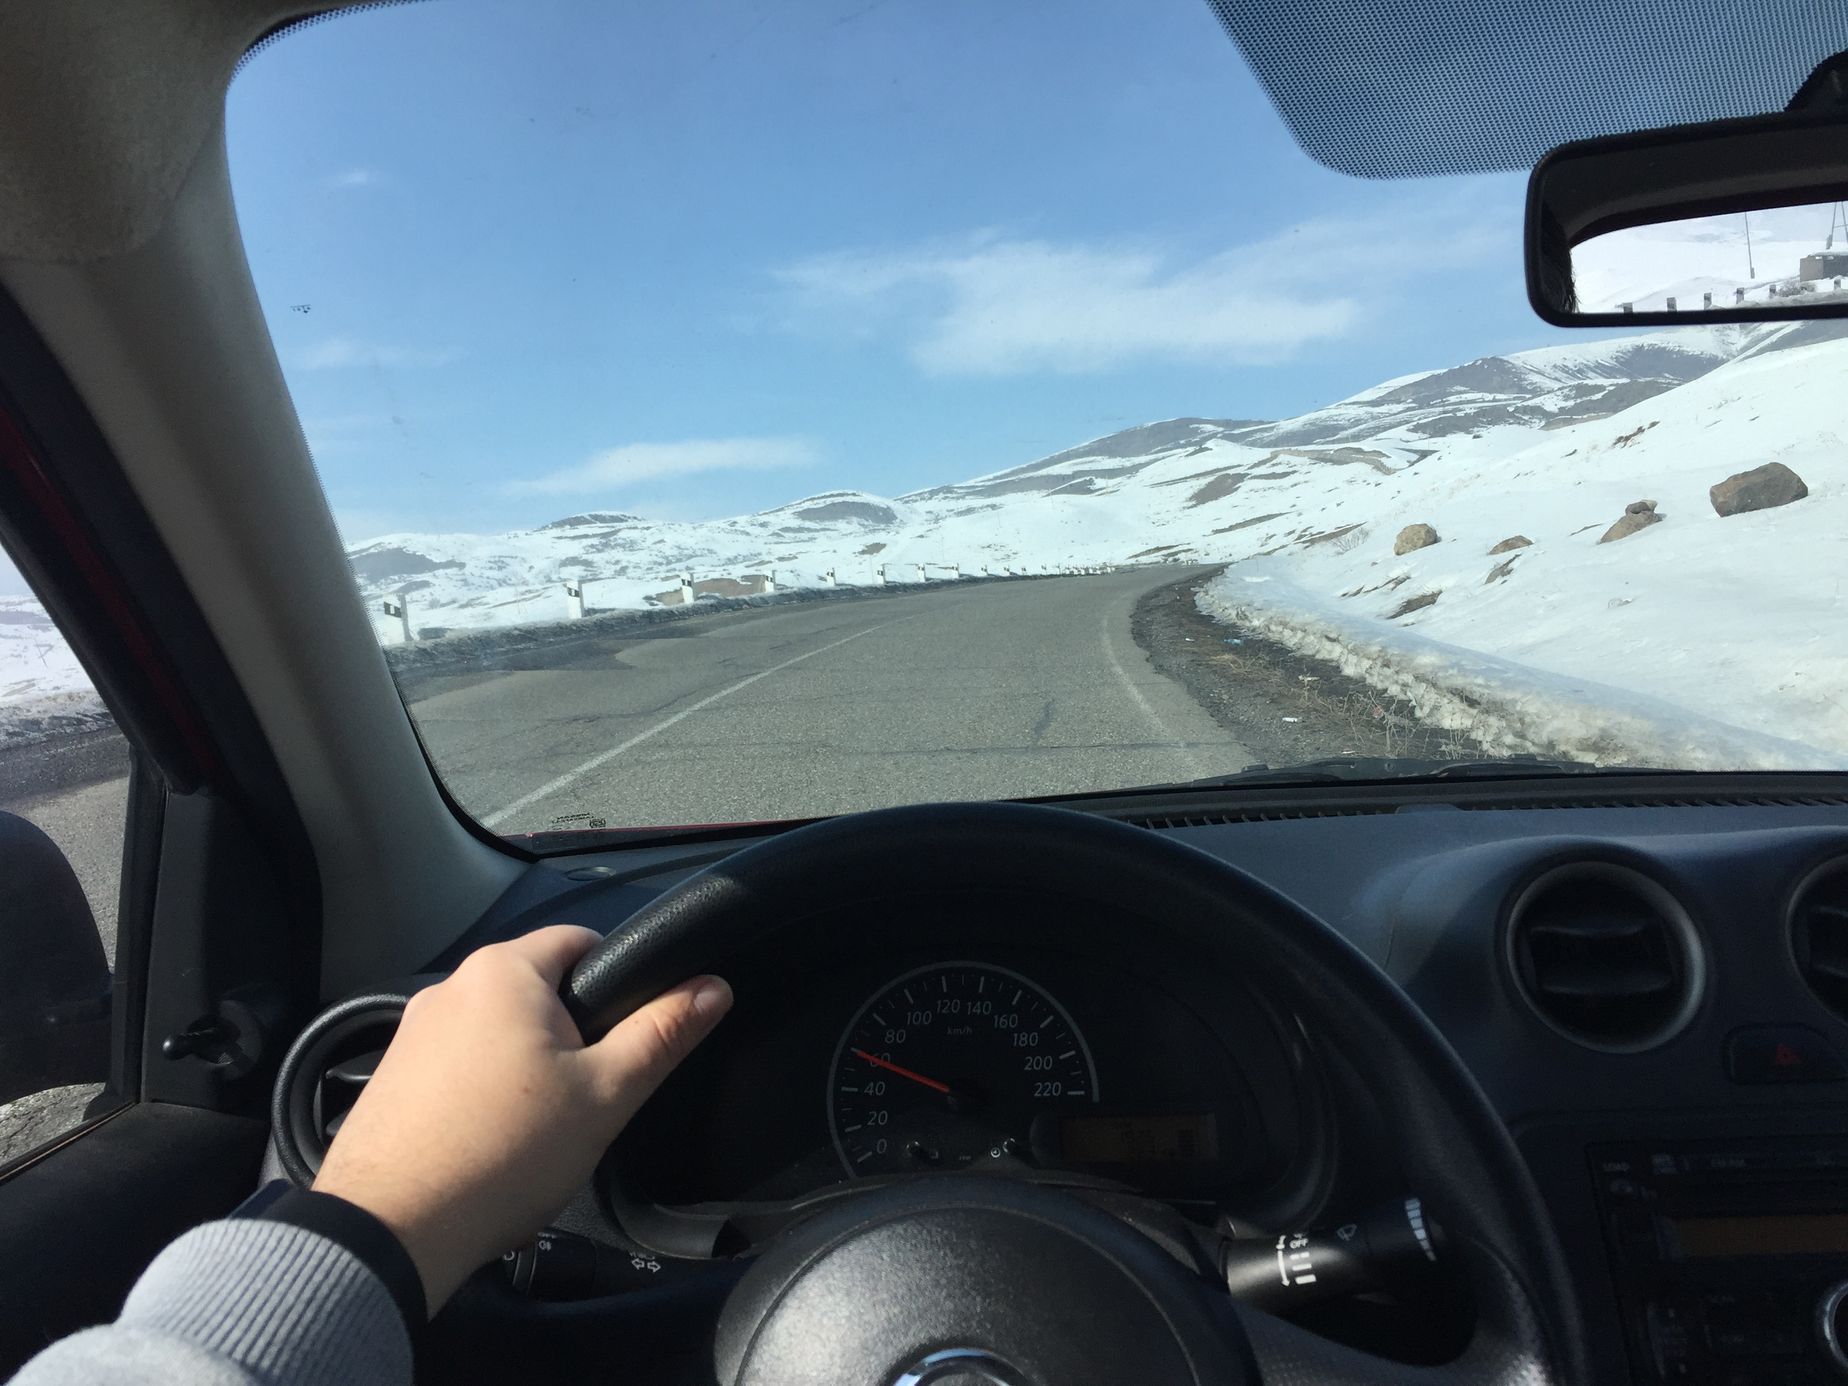 Na cestě po Arménii